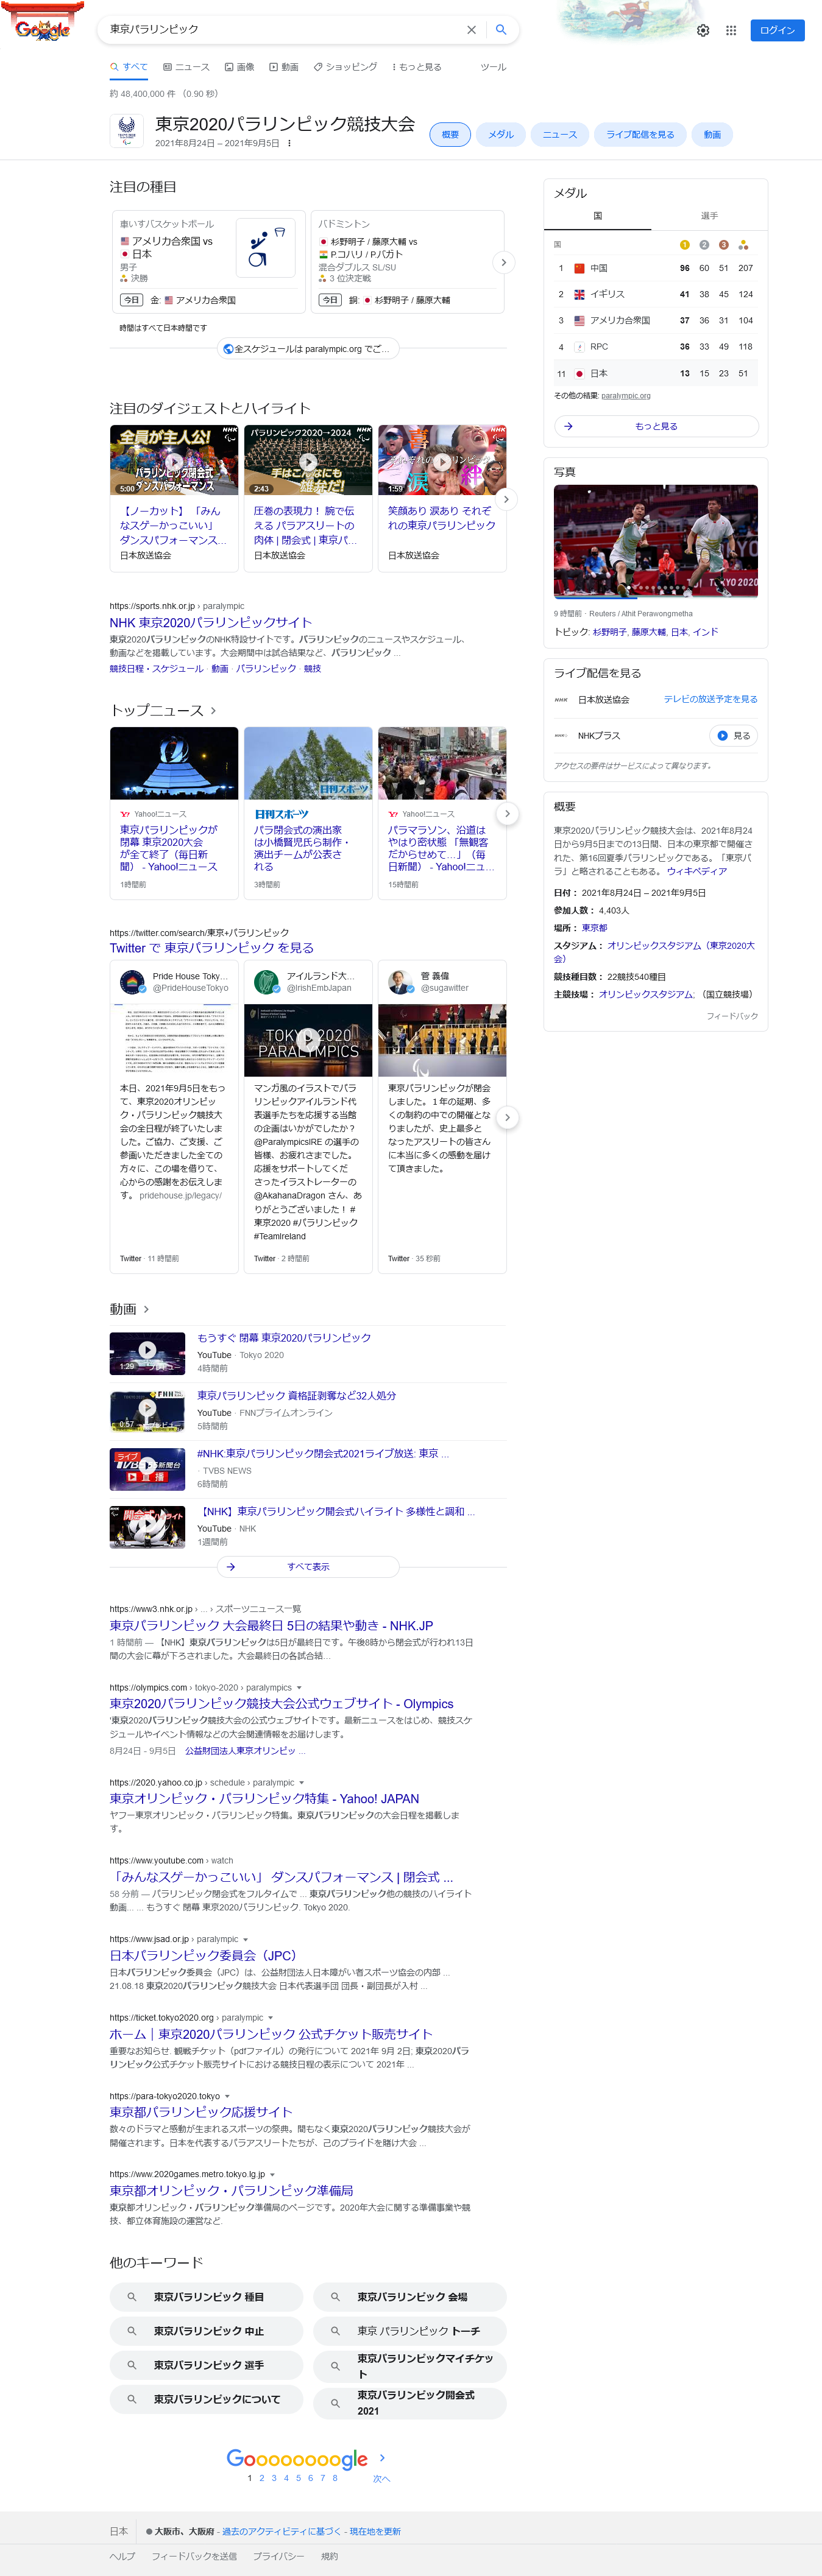 「東京パラリンピック」のGoogleにおける検索結果 2021年9月5日23時59分